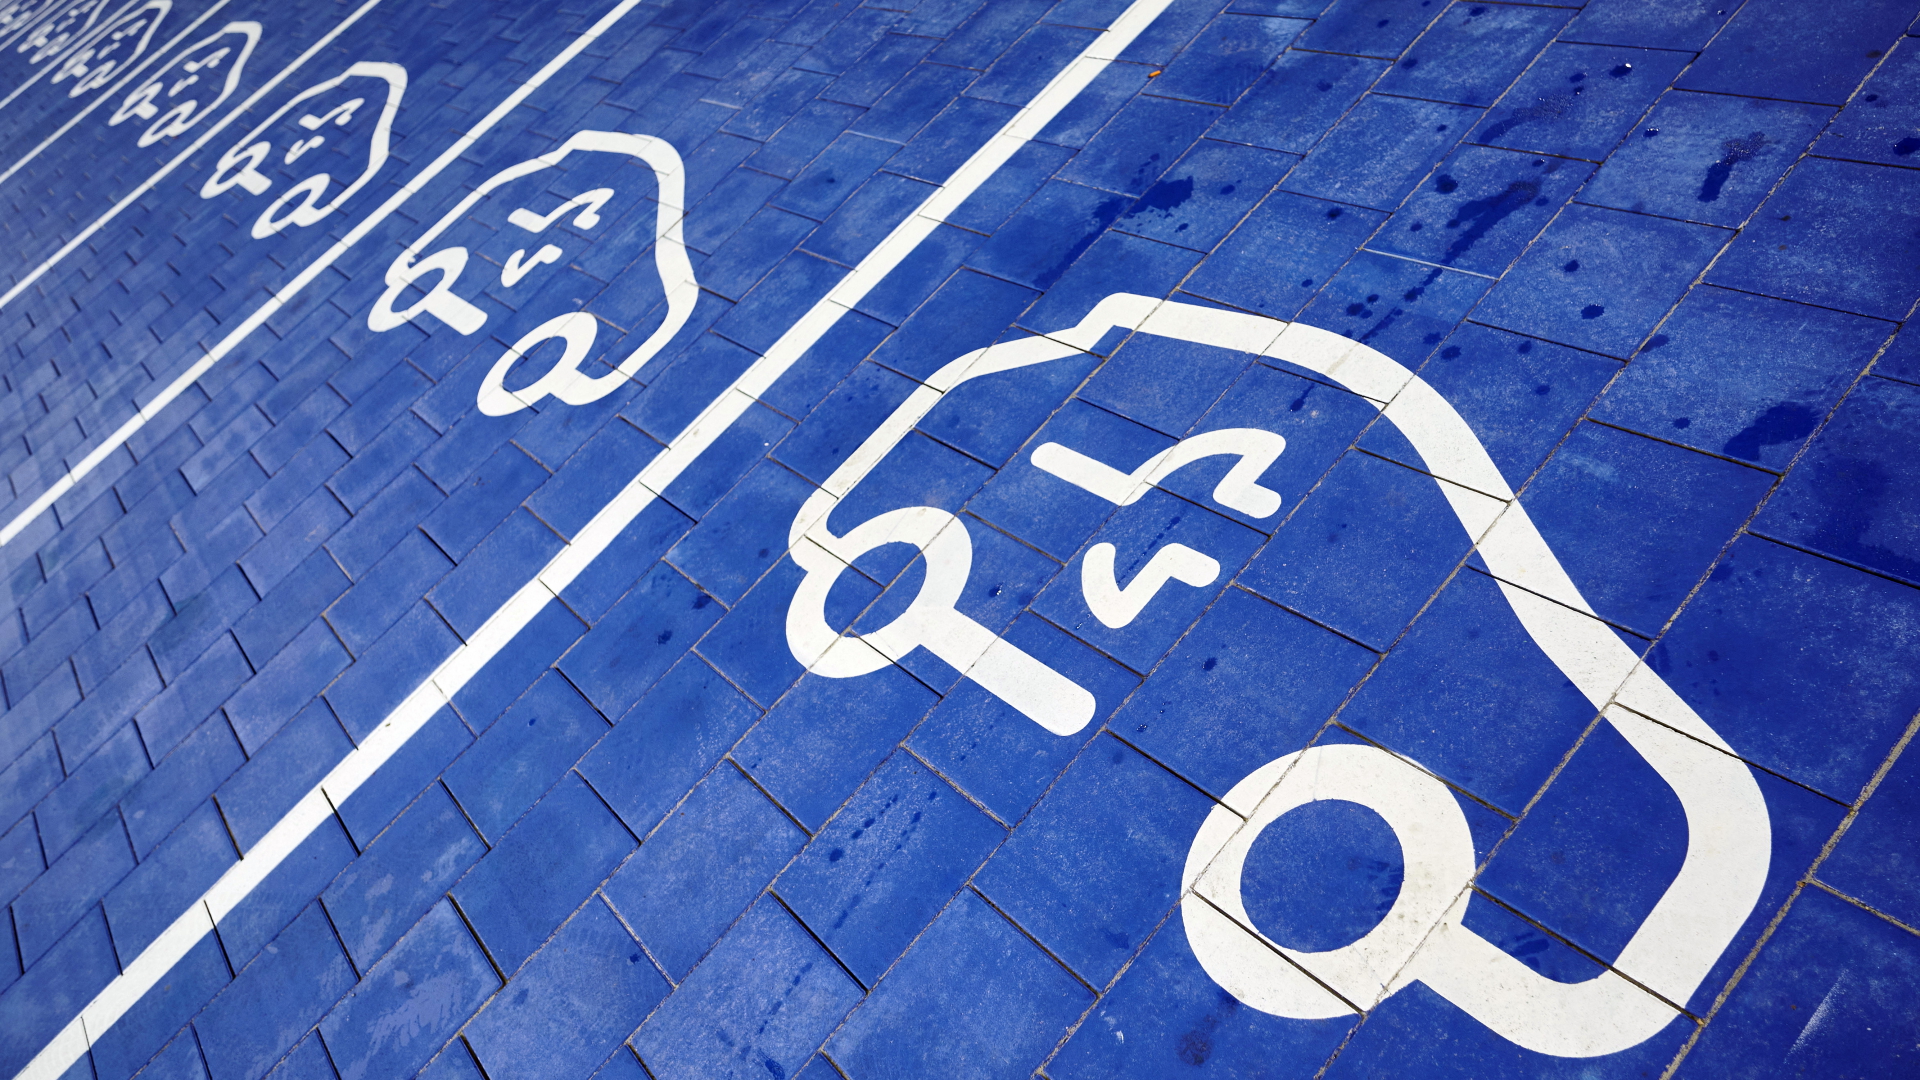 Symbole für Elektroautos sind auf Parkplätze gemalt